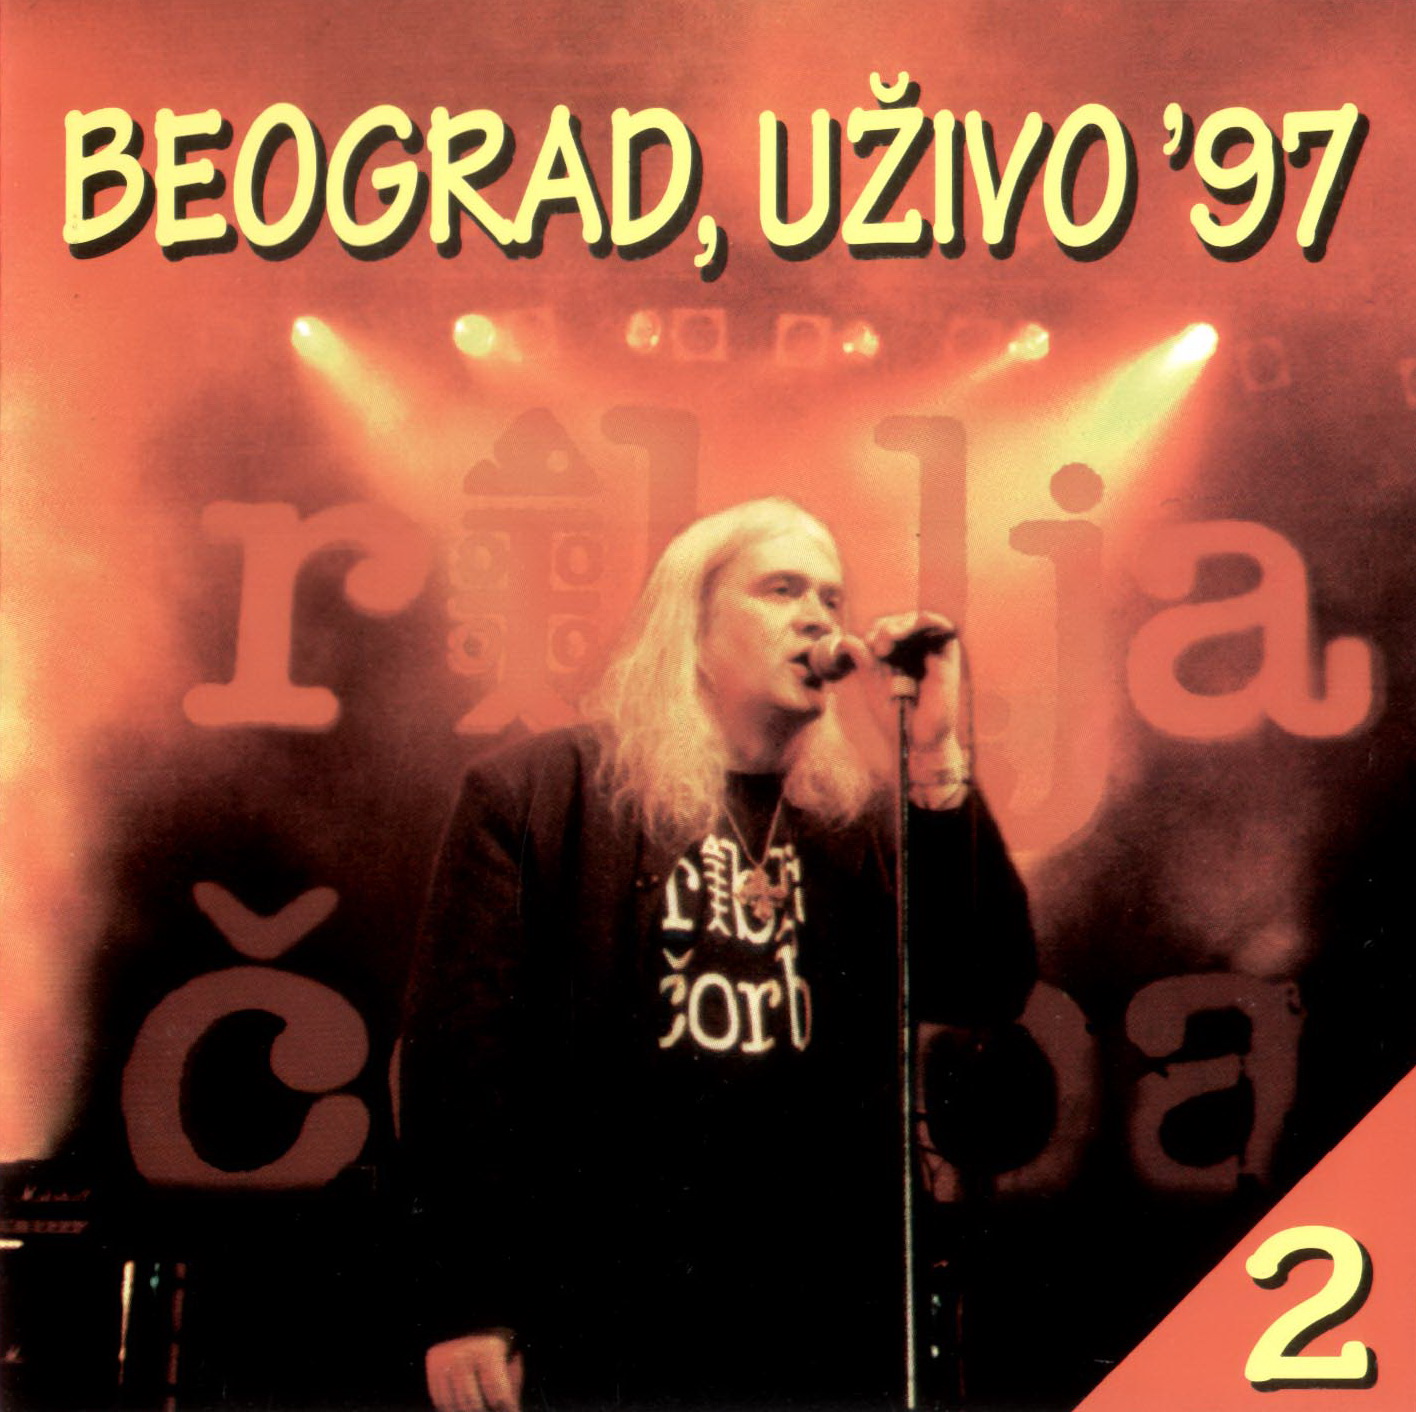 Riblja Corba Beograd uzivo 97 2 front